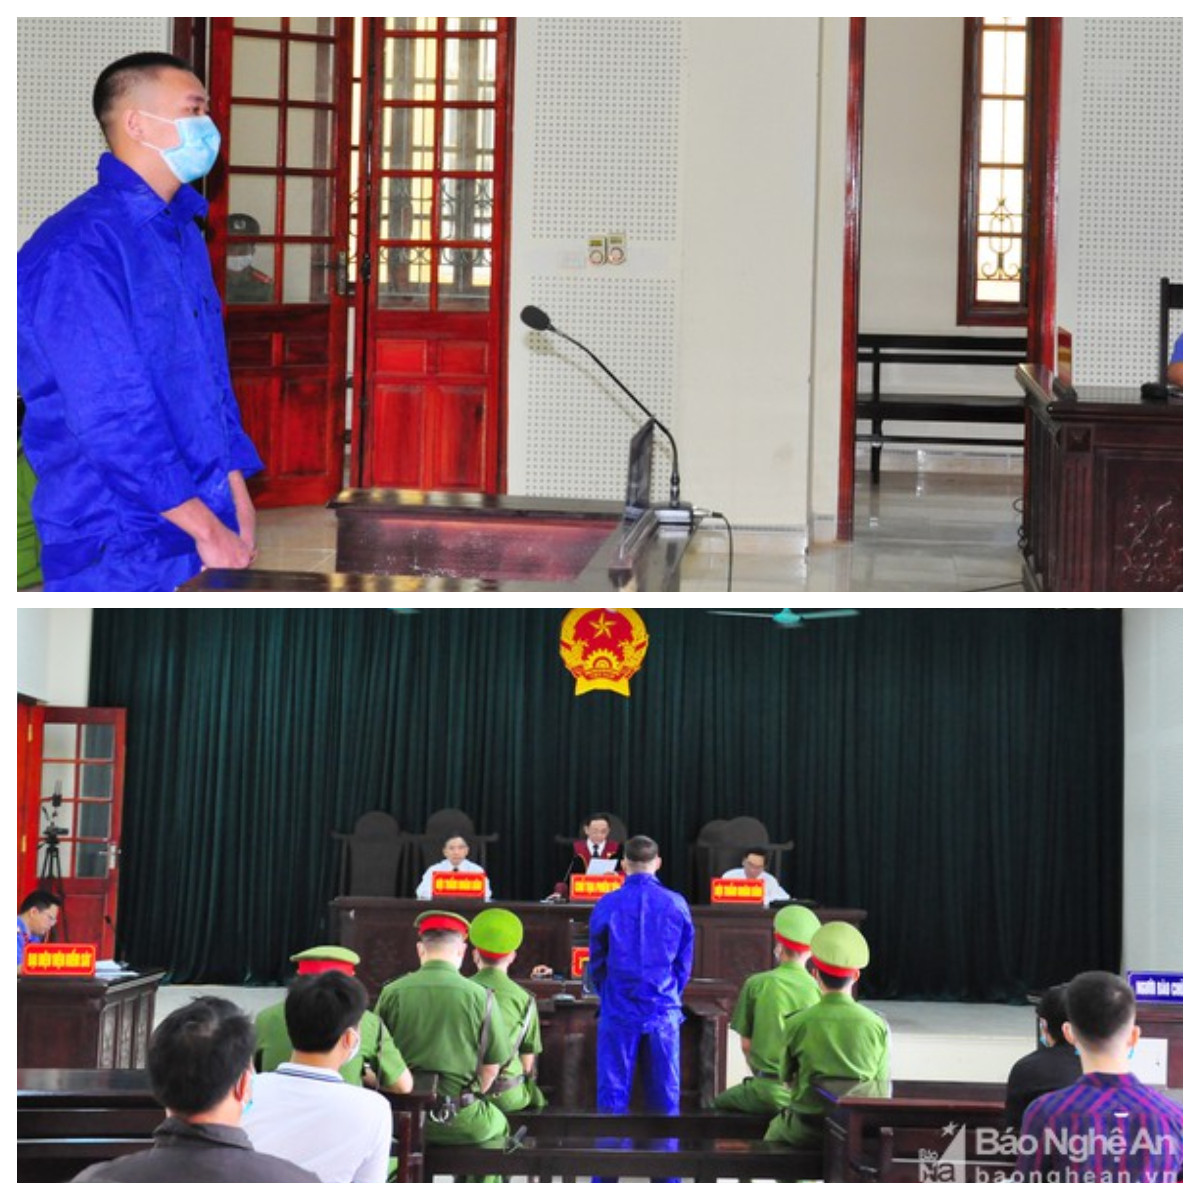 Phiên tòa xét về tội “Làm, tàng trữ, phát tán hoặc tuyên truyền thông tin, tài liệu, vật phẩm nhằm chống Nhà nước Cộng hòa xã hội chủ nghĩa Việt Nam”.